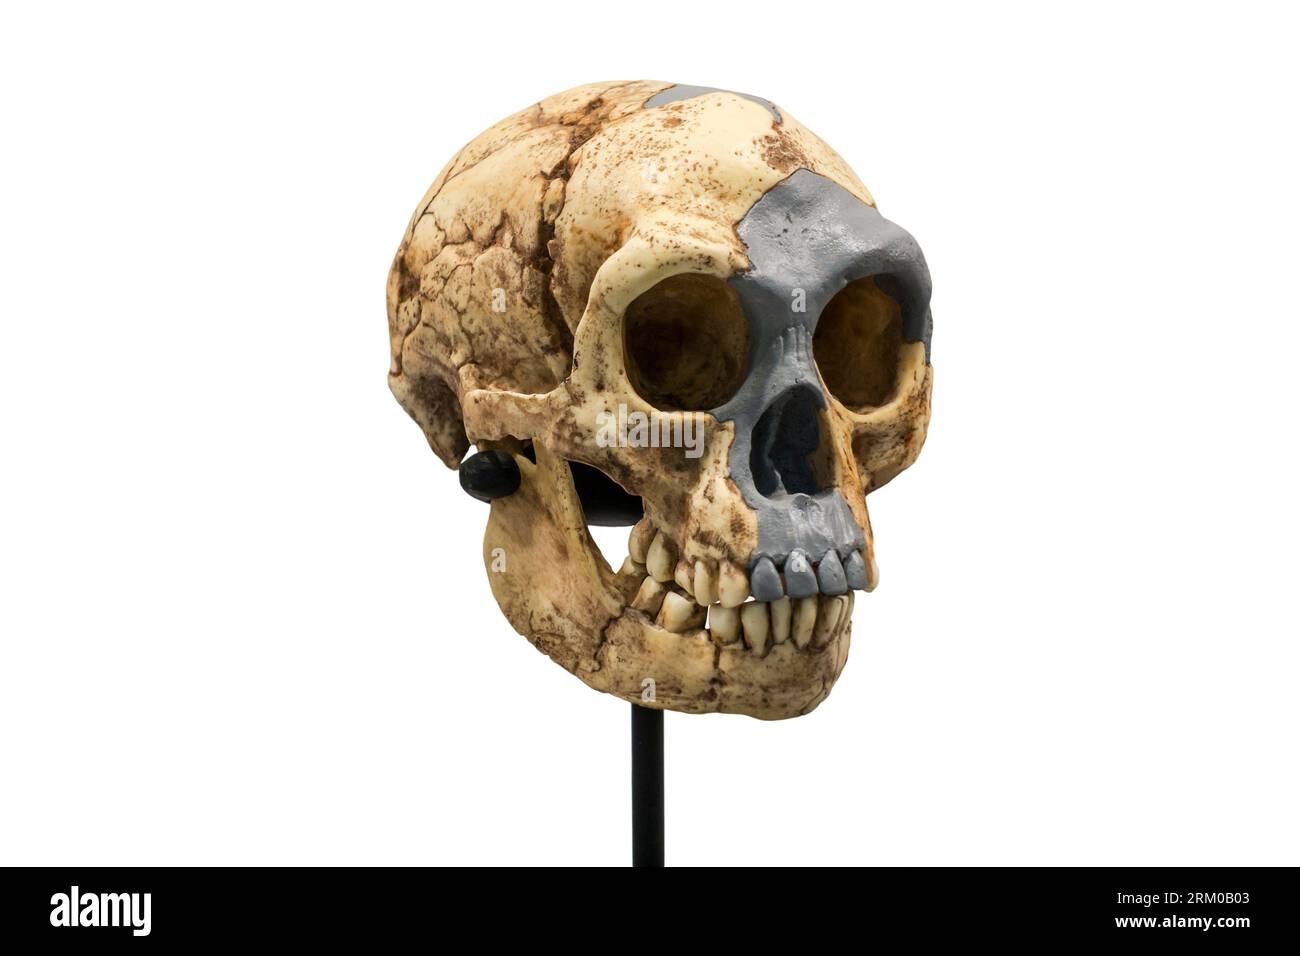 Schädel-Nachbildung von Homo floresiensis, bekannt als Flores man aus der Höhle Liang Bua, archaischer Mensch, der von 95.000 bis 50.000 Jahren in Indonesien lebte Stockfoto